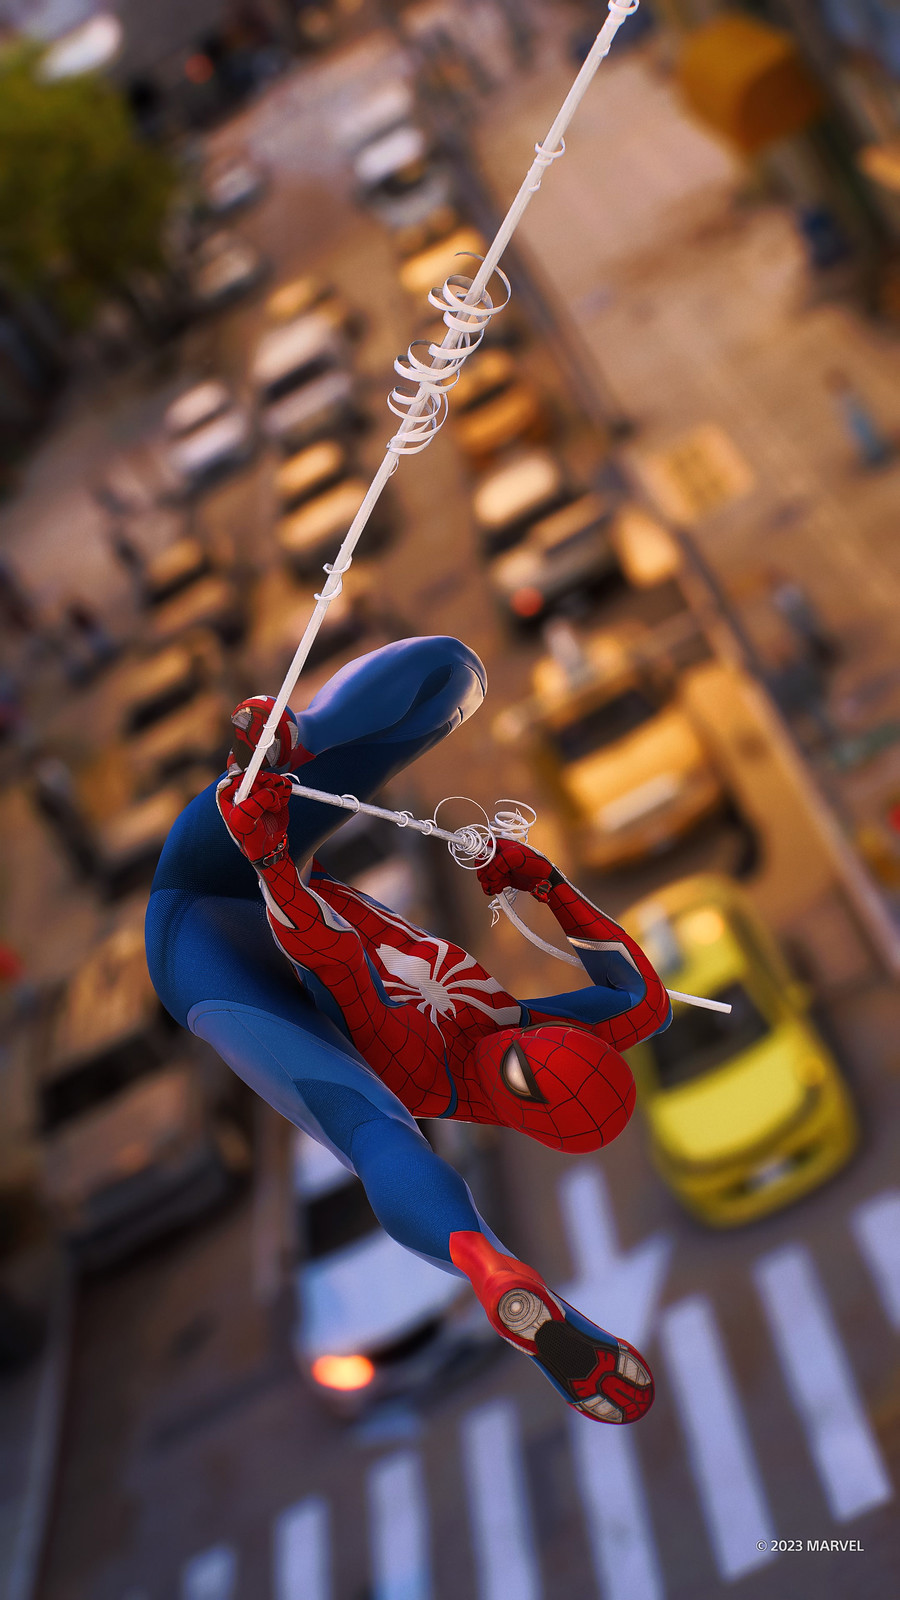 Por qué Spider-Man 2 no sale en PS4? Este vídeo muestra el